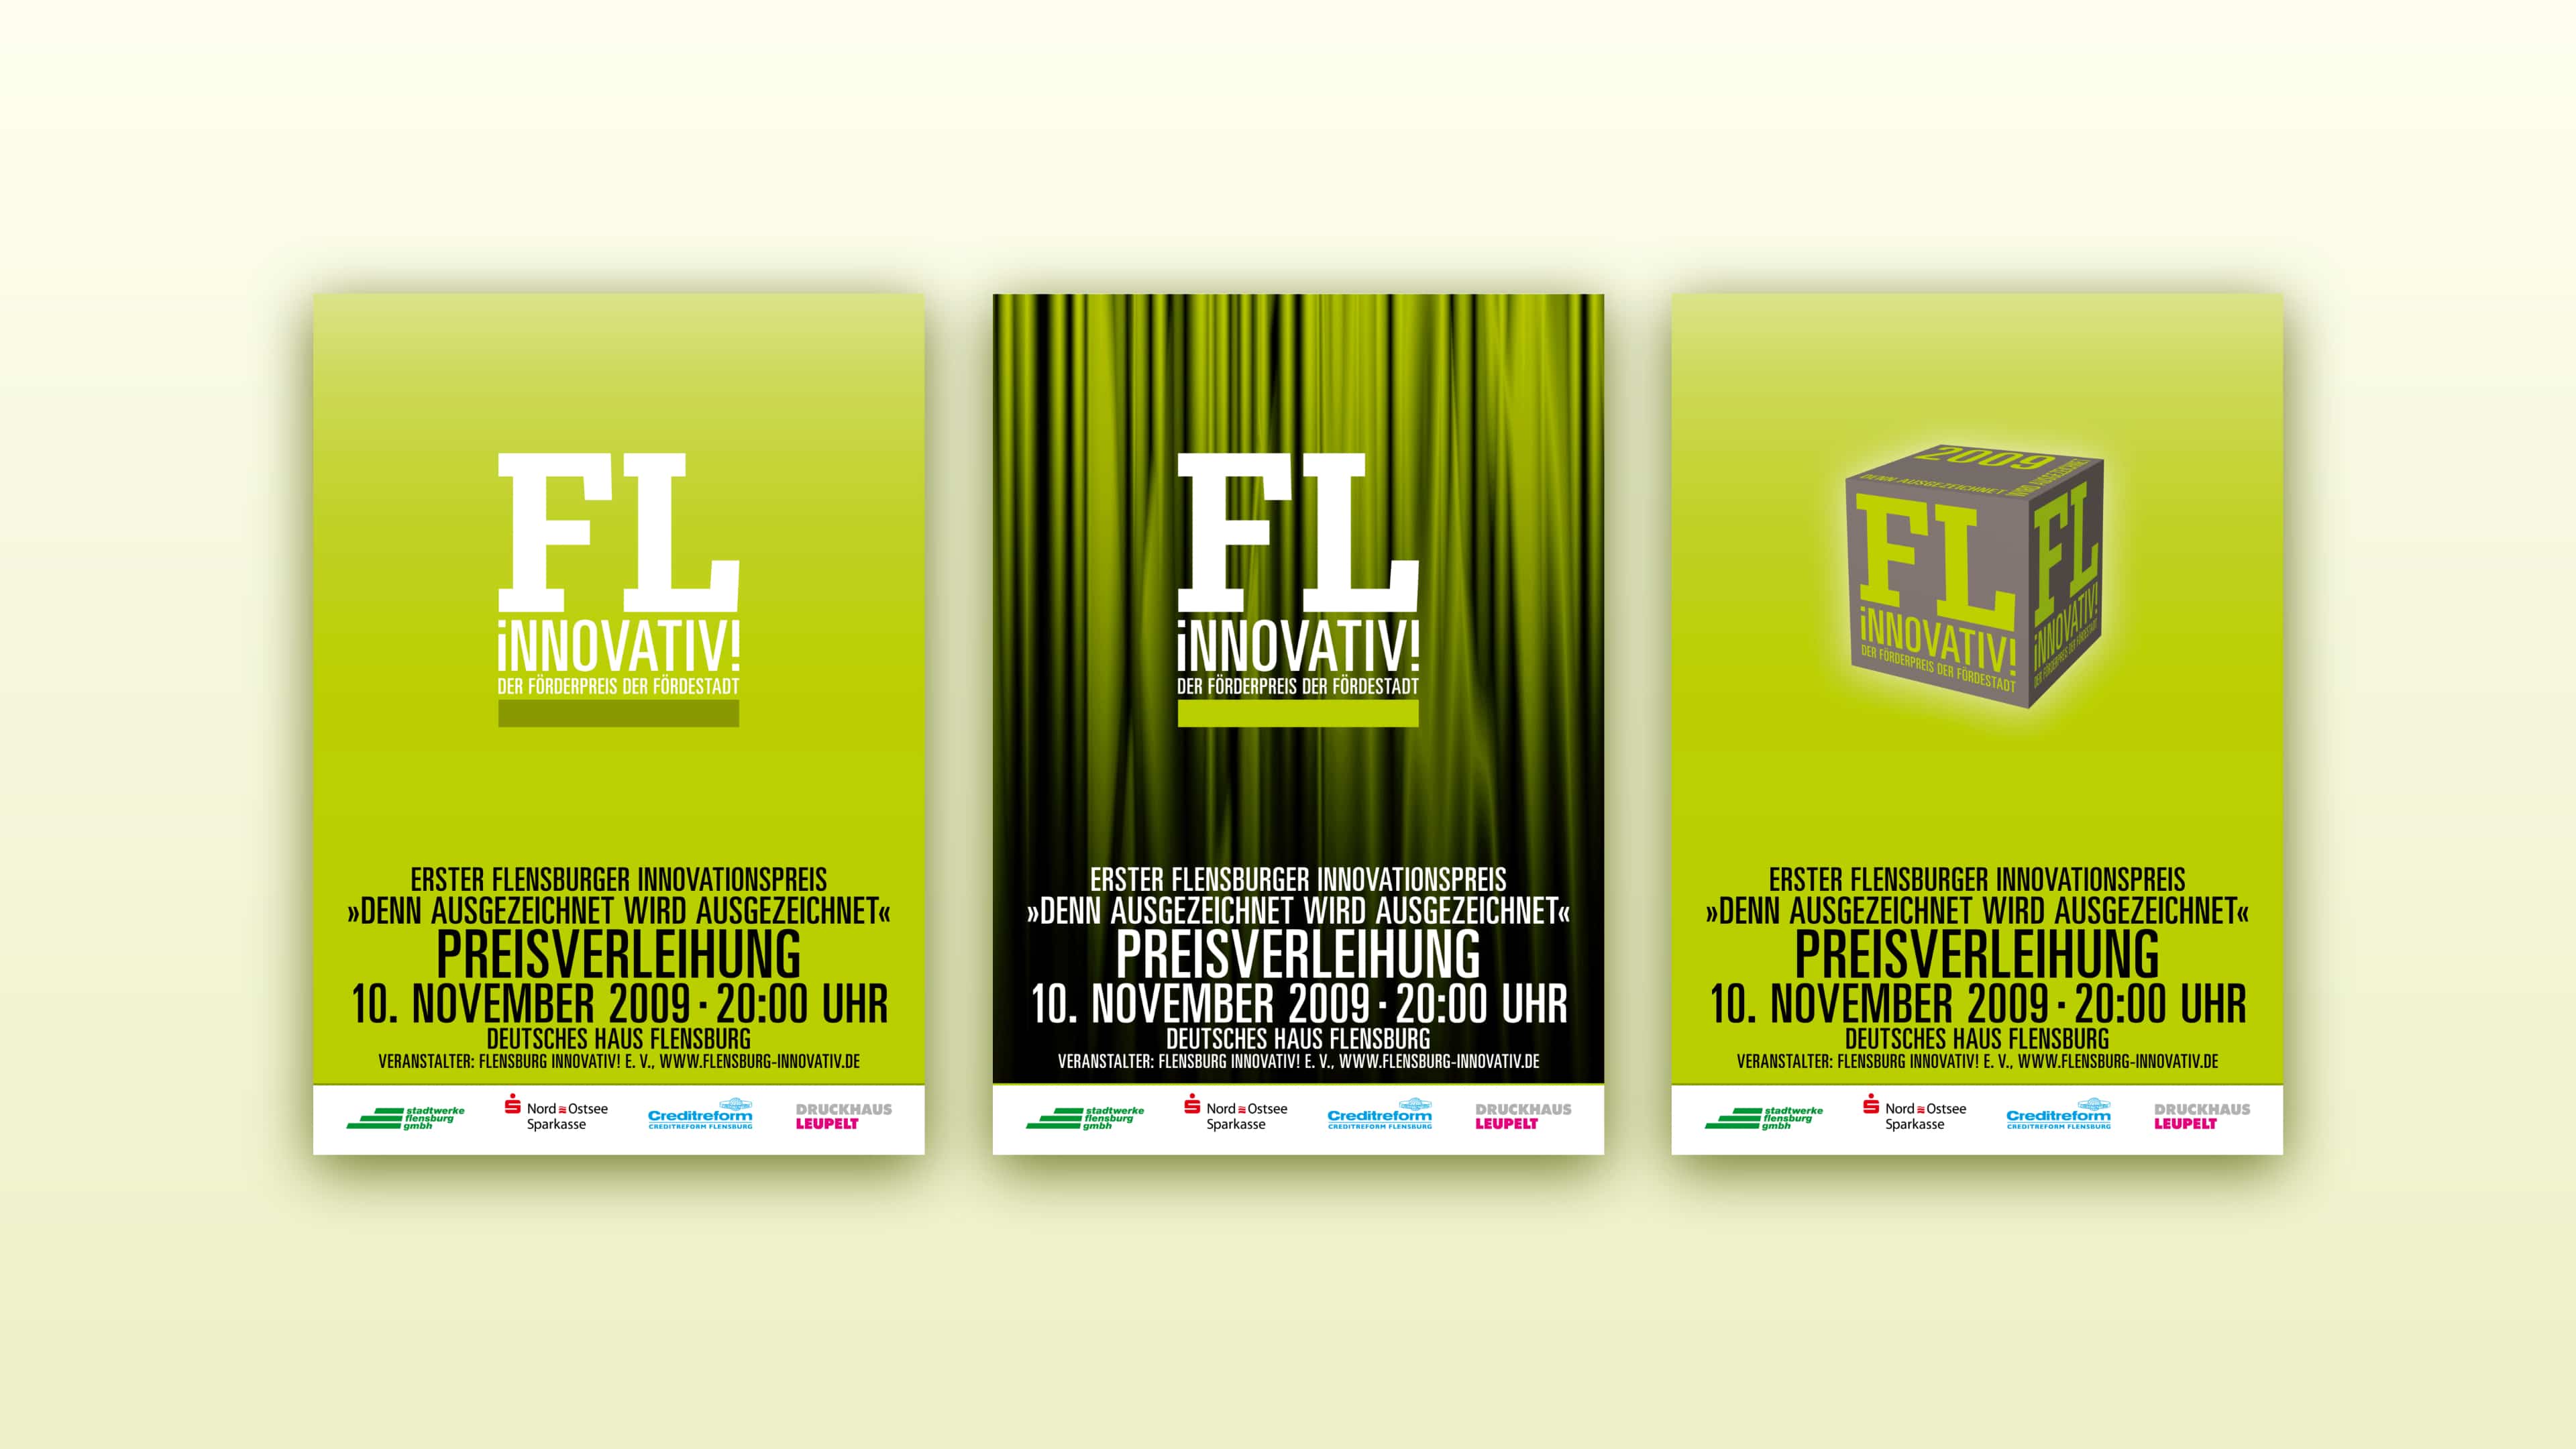 Drei unterschiedliche grüne Plakate für "FL innovativ! Der Förderpreis der Fördestadt"